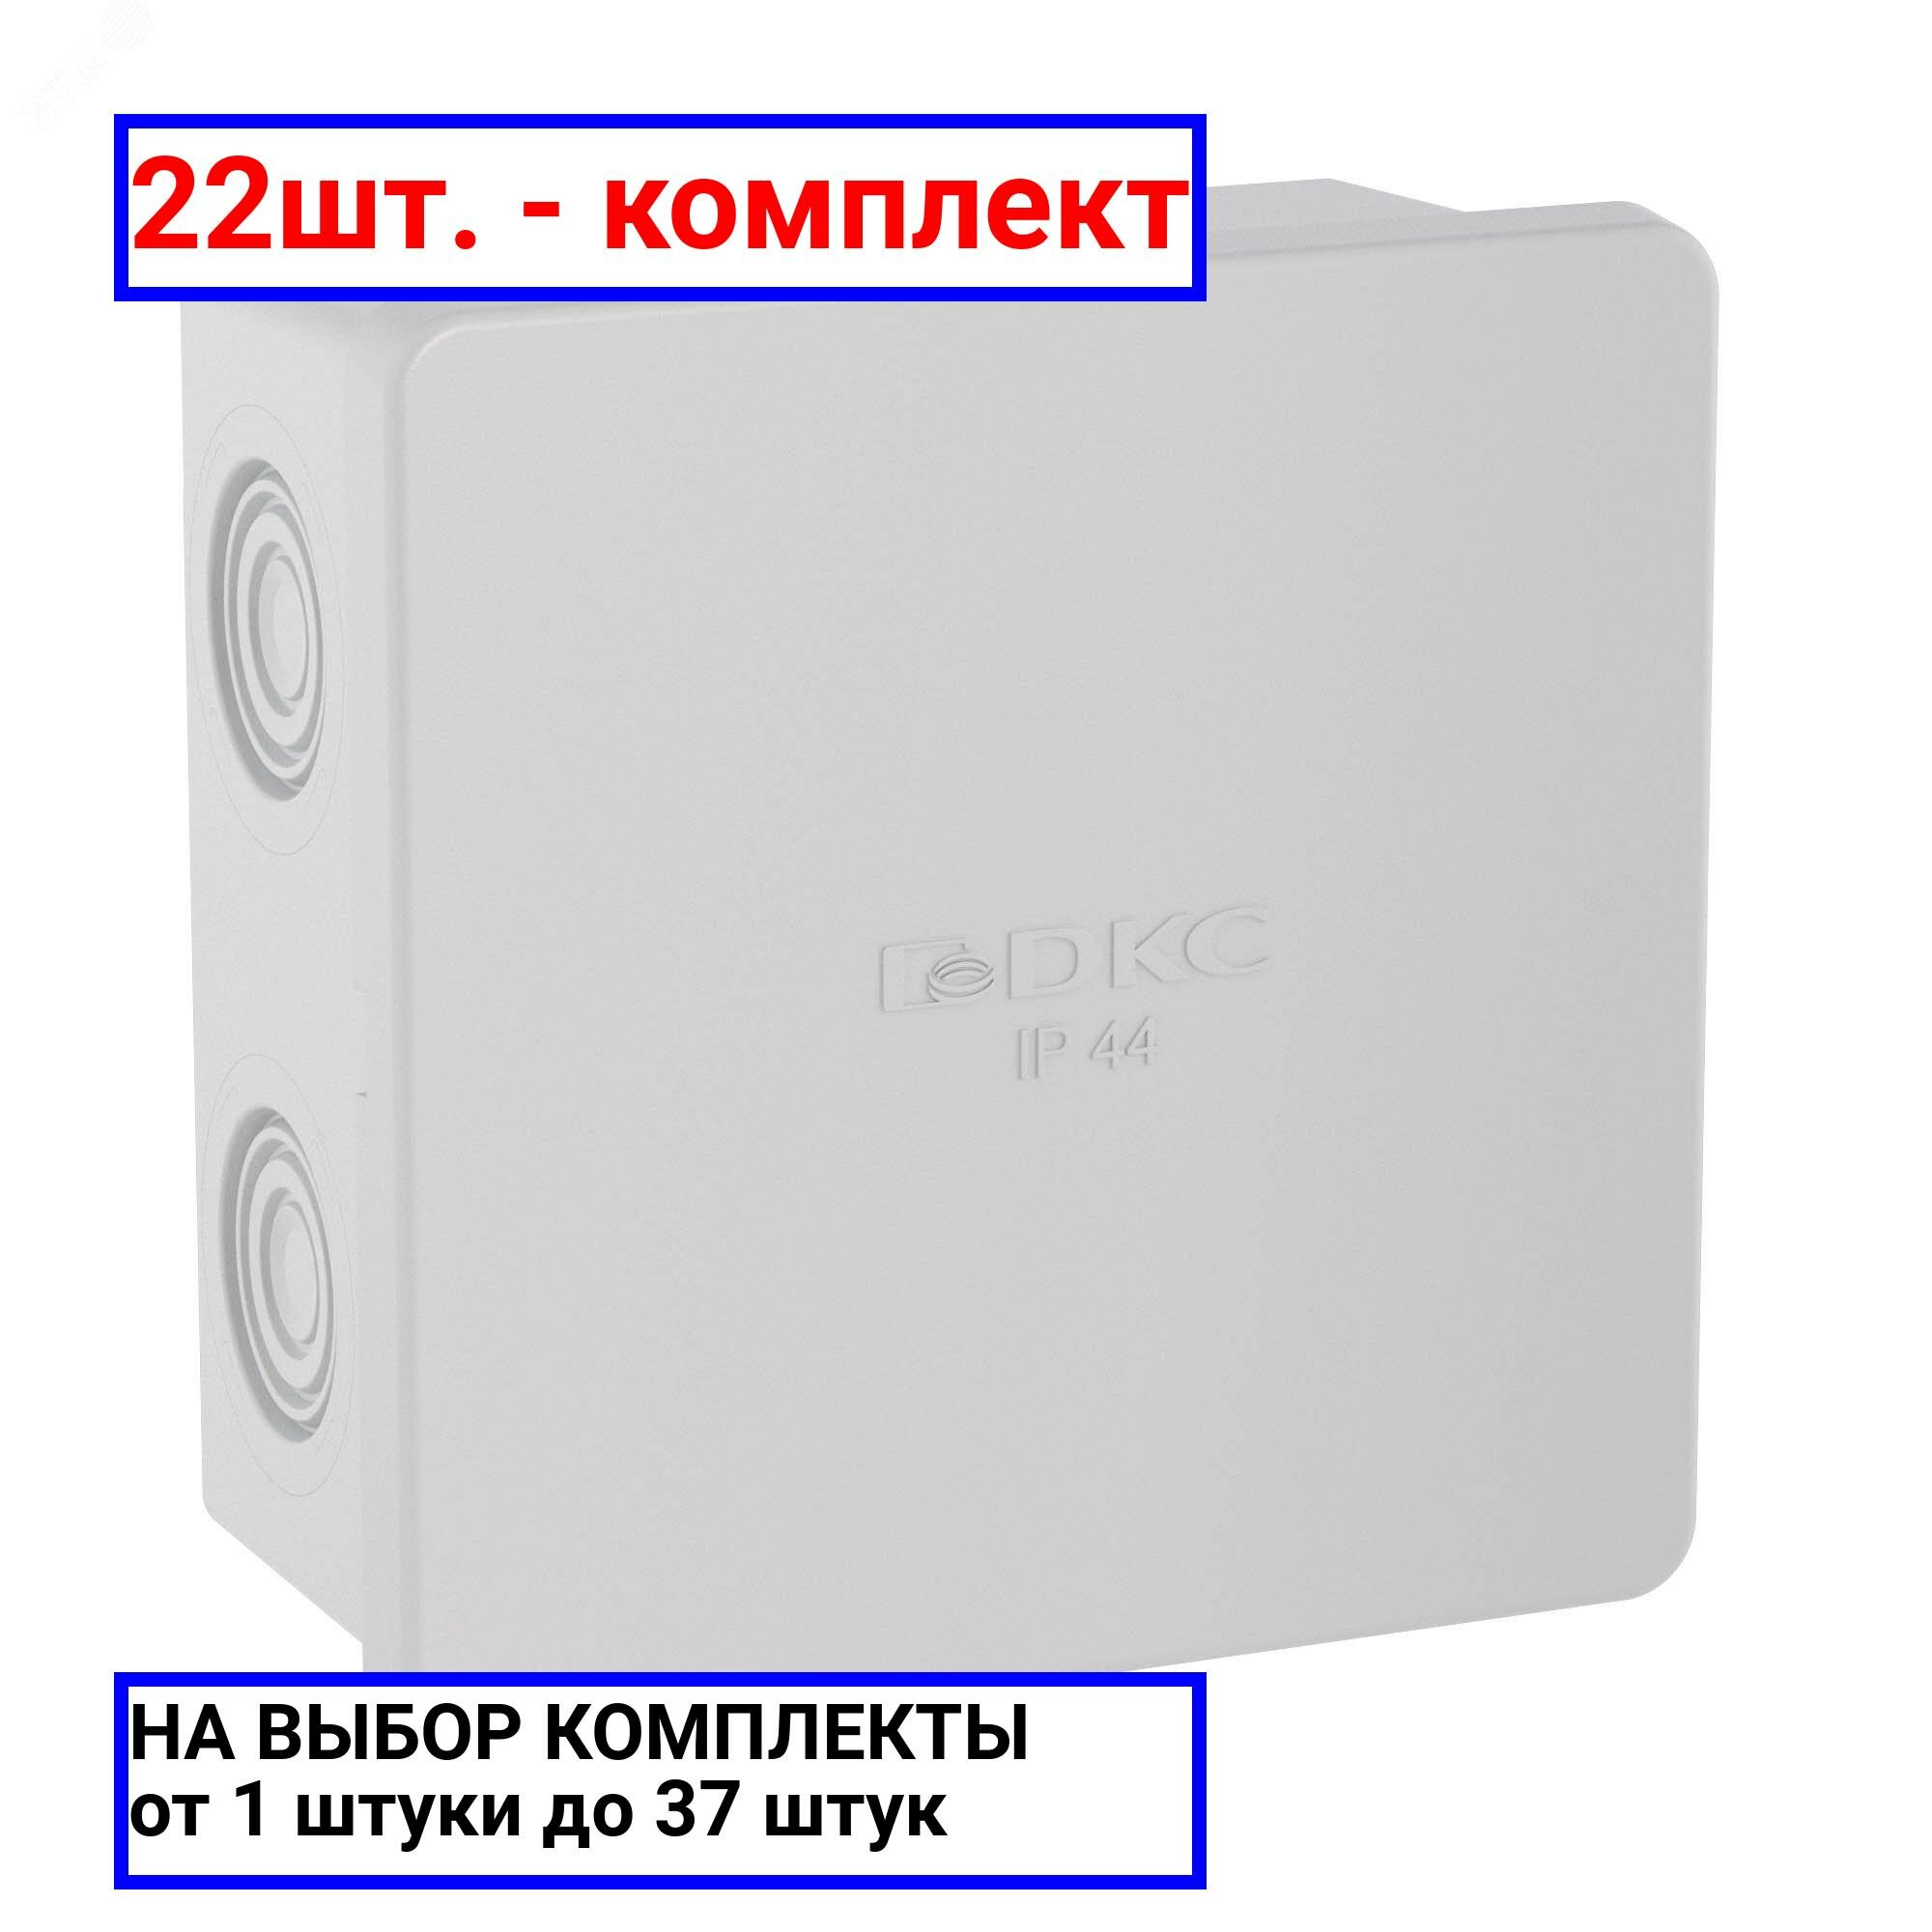 22шт. - Коробка распределительная 80х80х40мм IP44 с кабельными вводами / DKC; арт. 53700; оригинал / - комплект 22шт